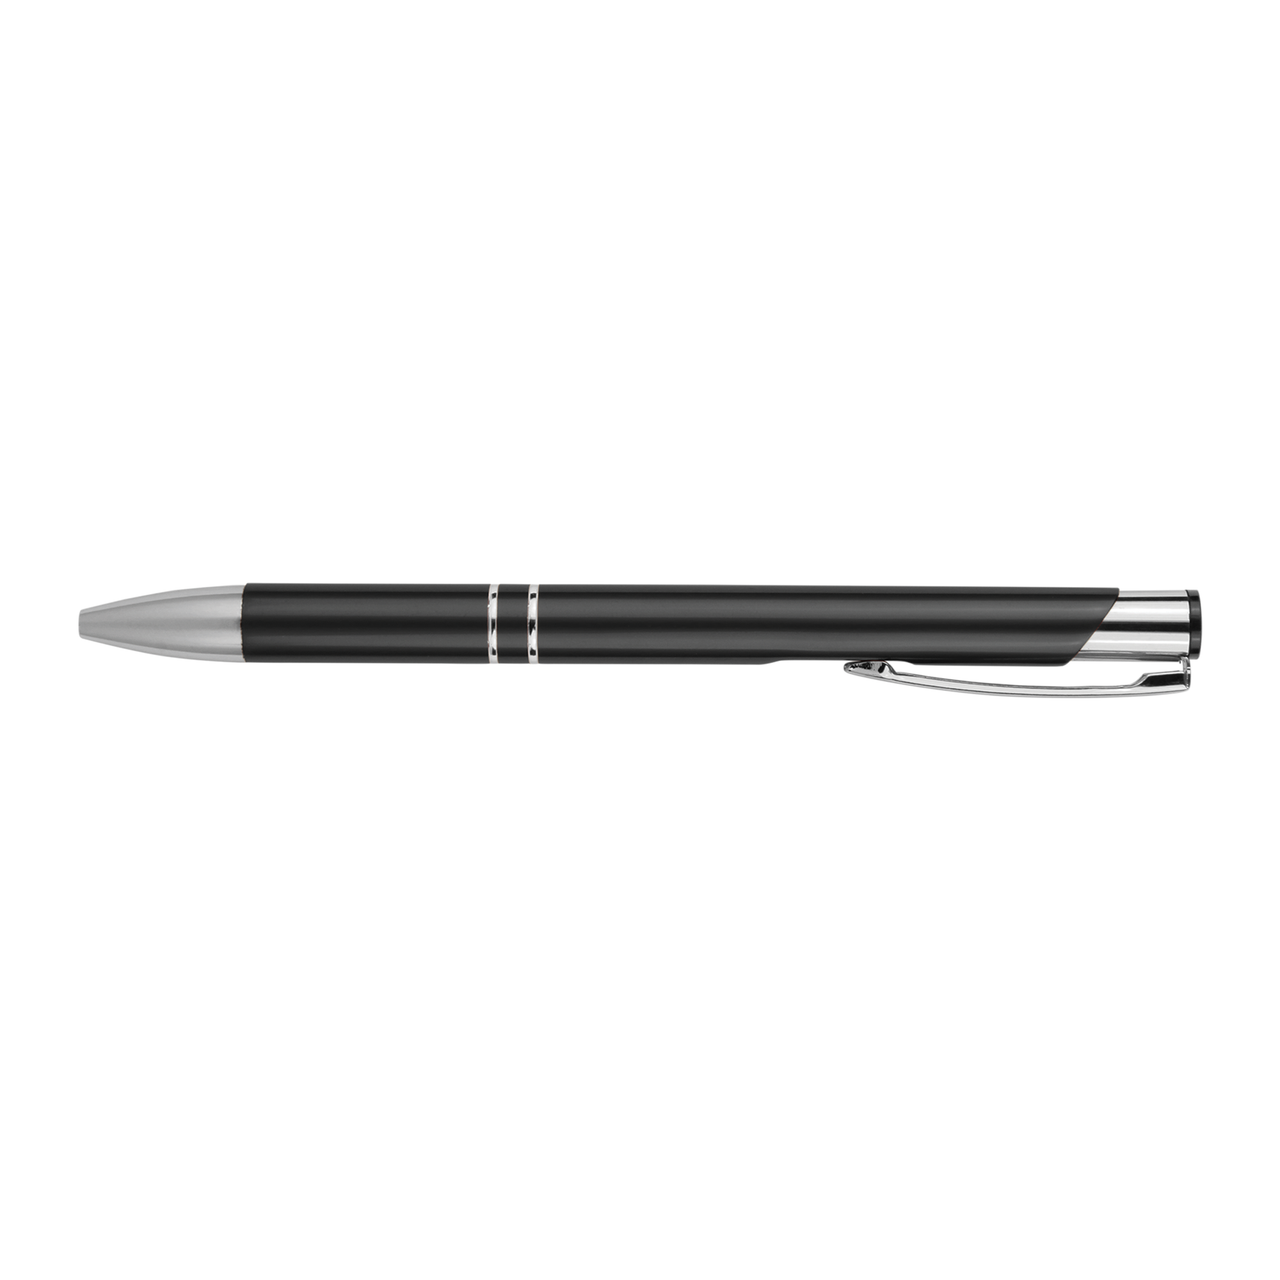 Okkurrtttt Metal Pens | Motivational Writing Tools Office Supplies Coworker Gifts Stocking Stuffer Baum Designs